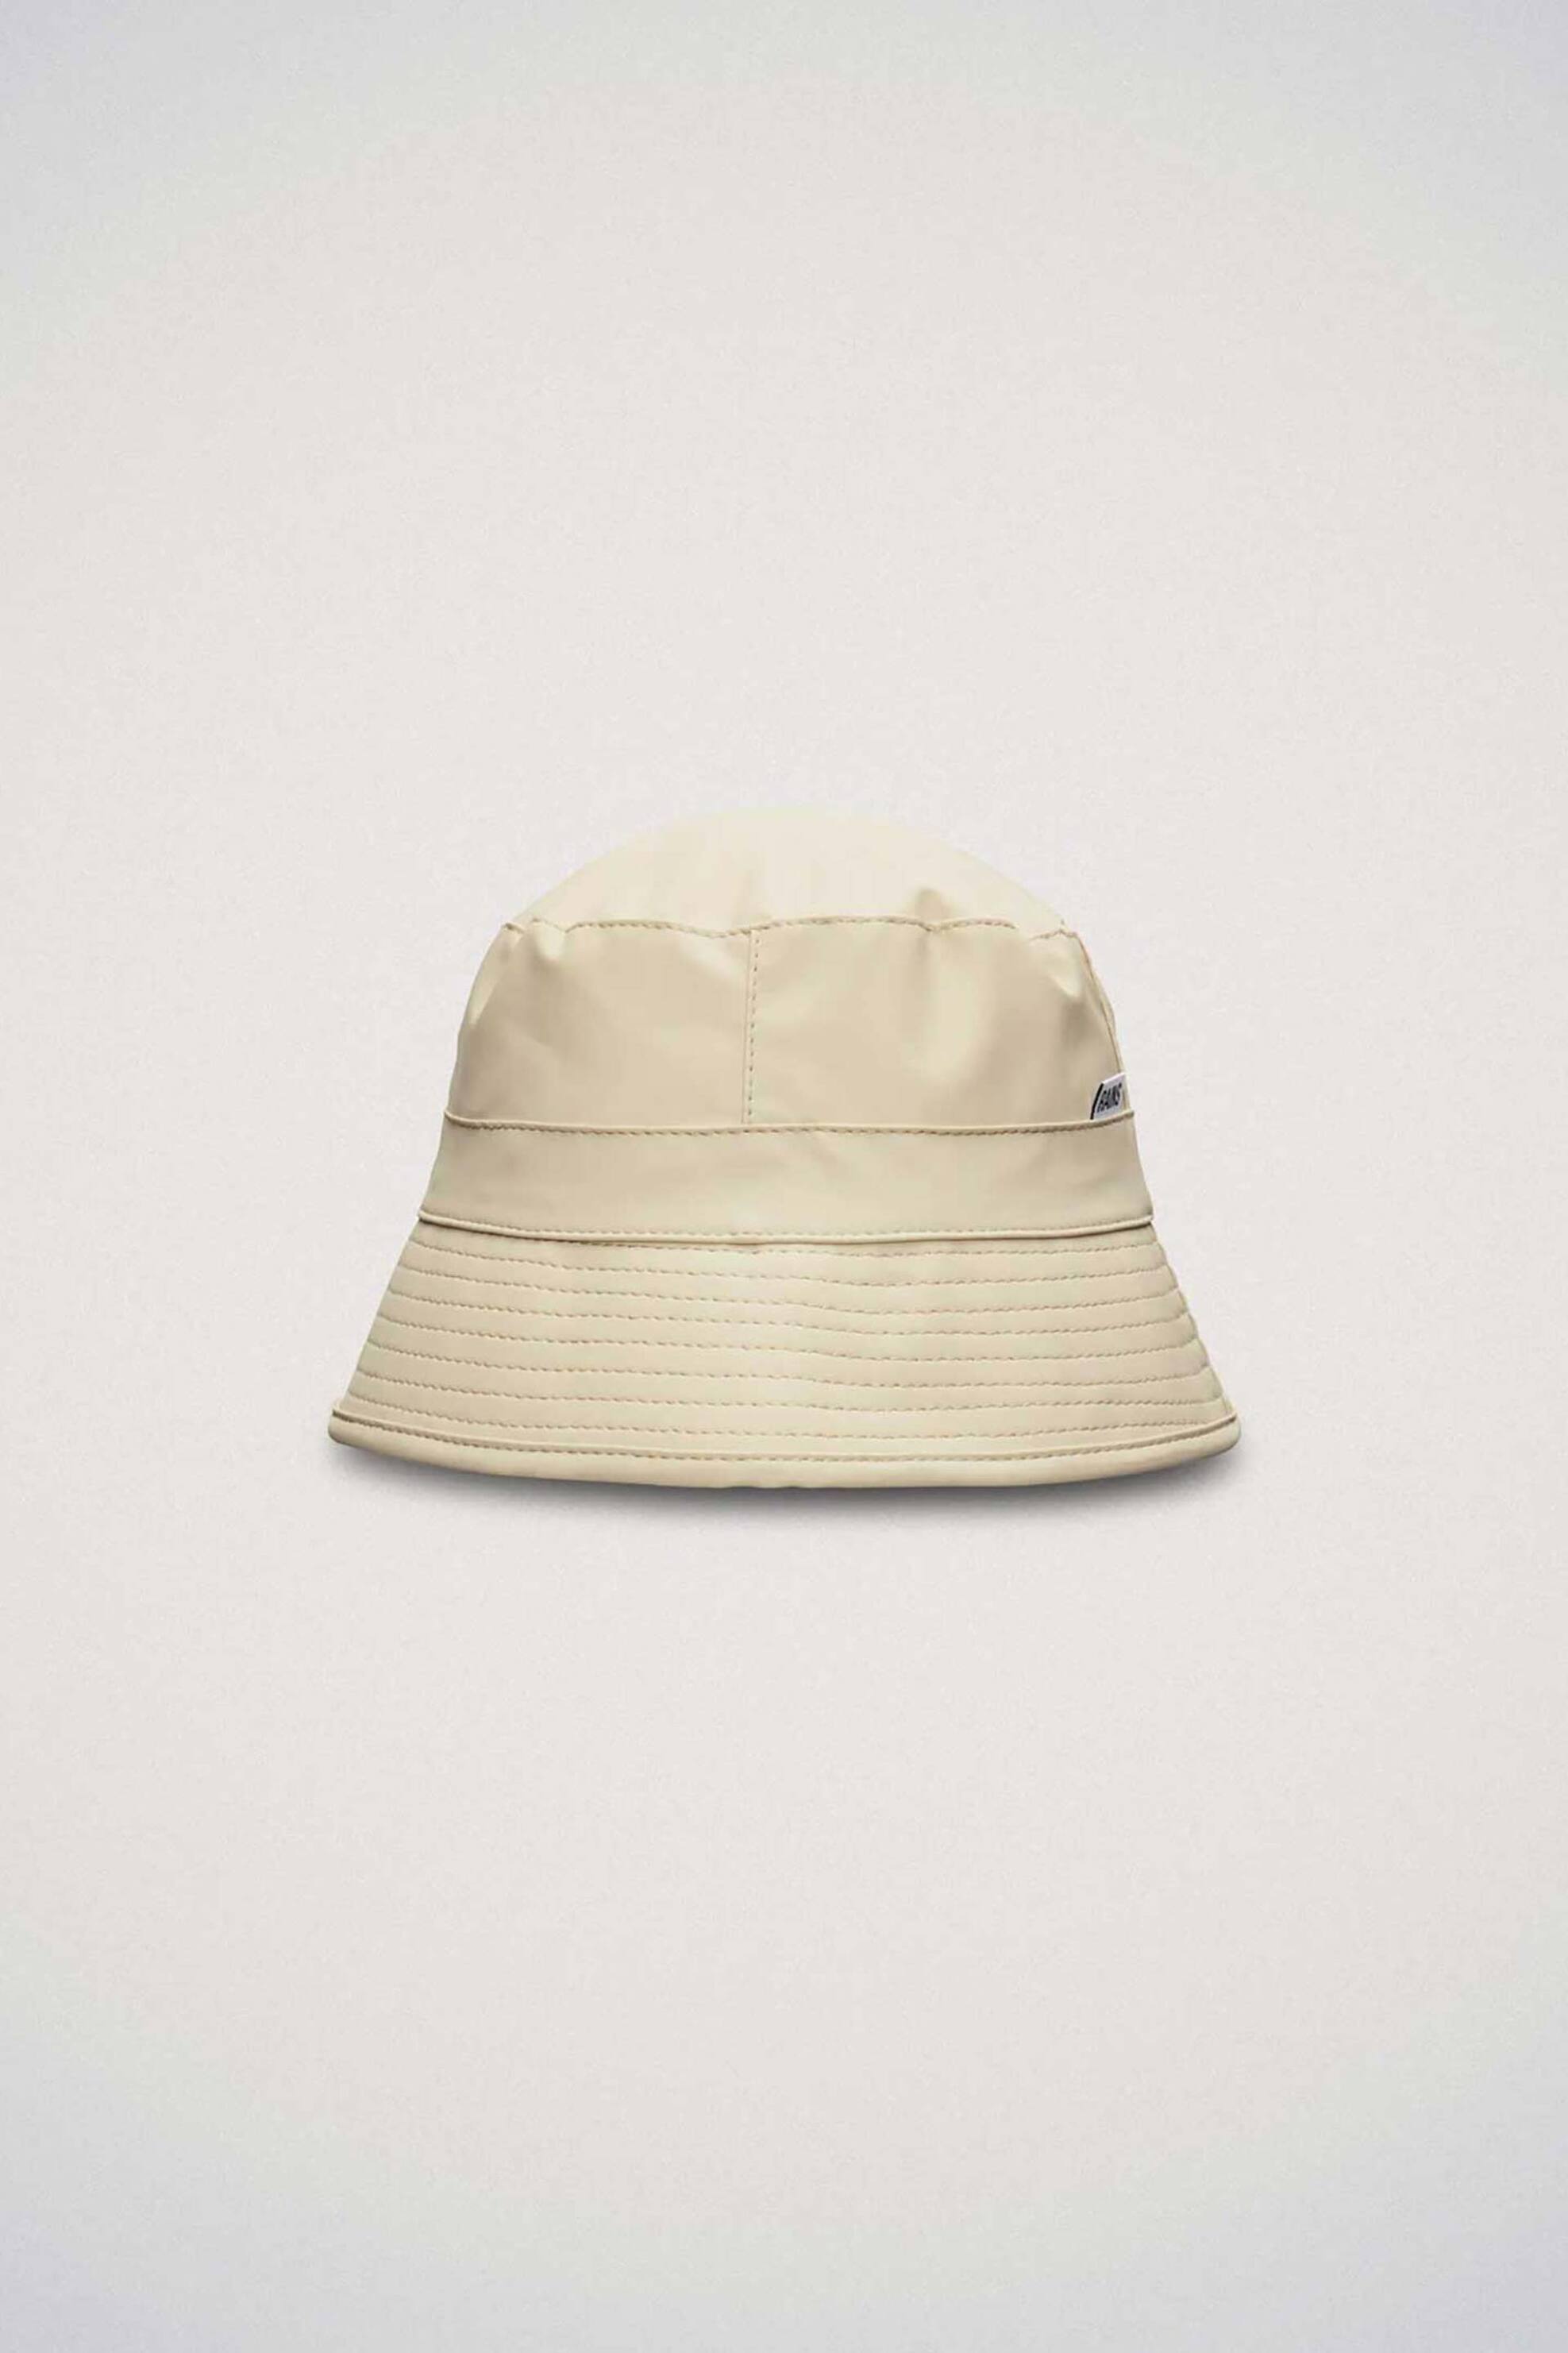 Ανδρική Μόδα > Ανδρικά Αξεσουάρ > Ανδρικά Καπέλα & Σκούφοι Rains unisex καπέλο "Bucket Hat" - RNSSS2420010 Μπεζ